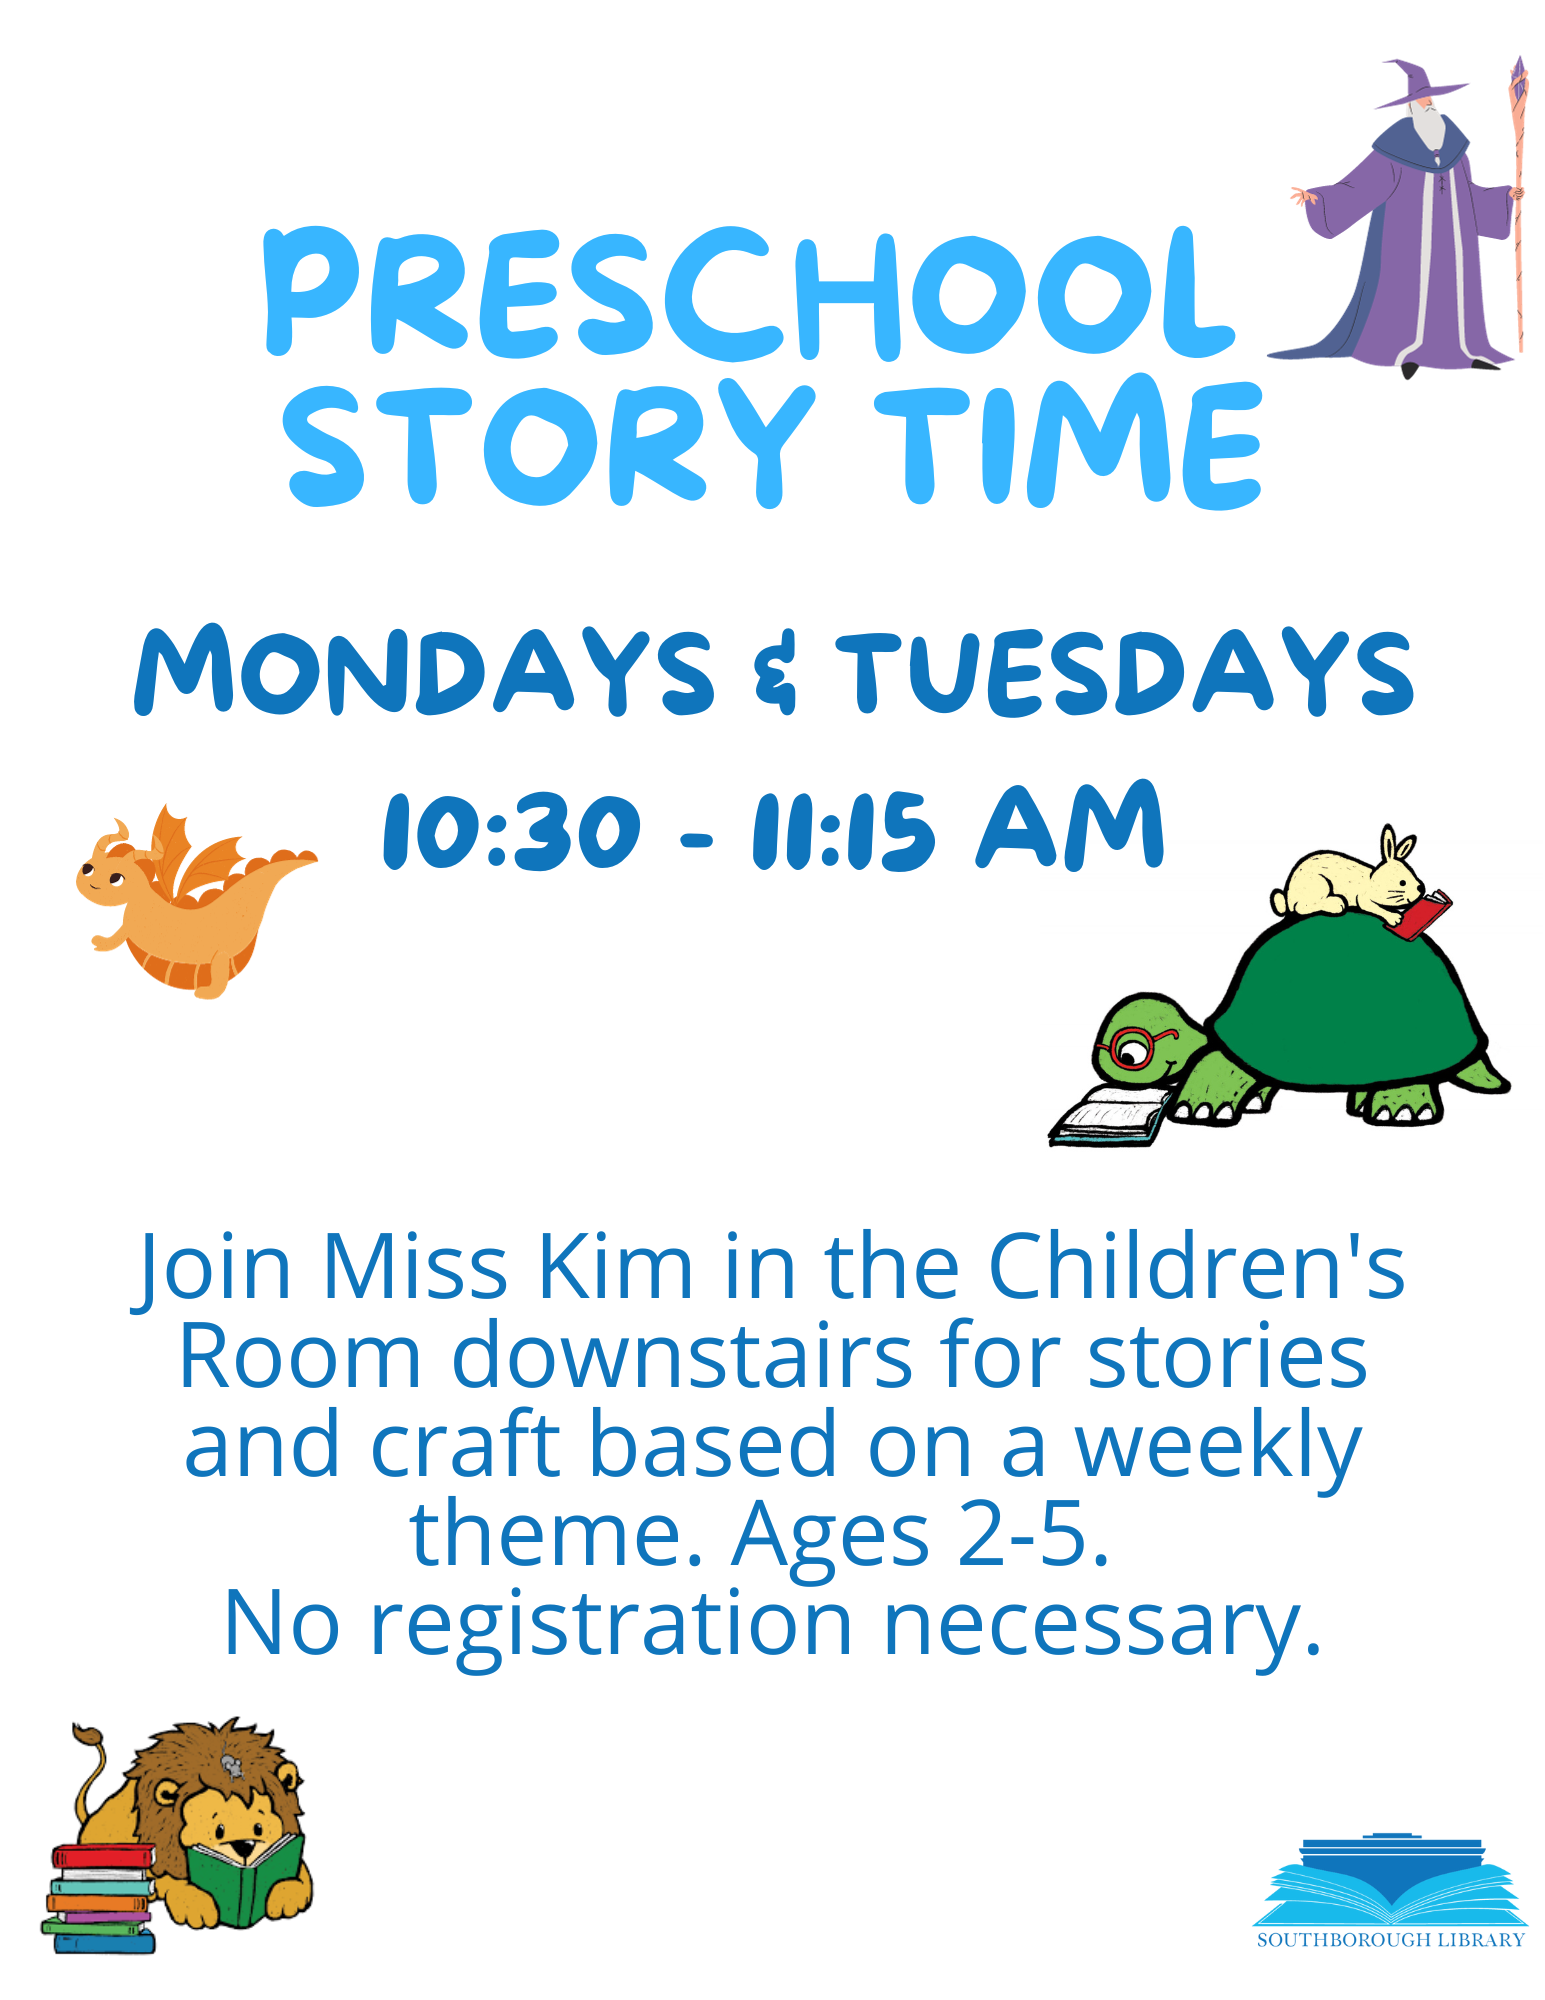 Preschool Story Time flyer